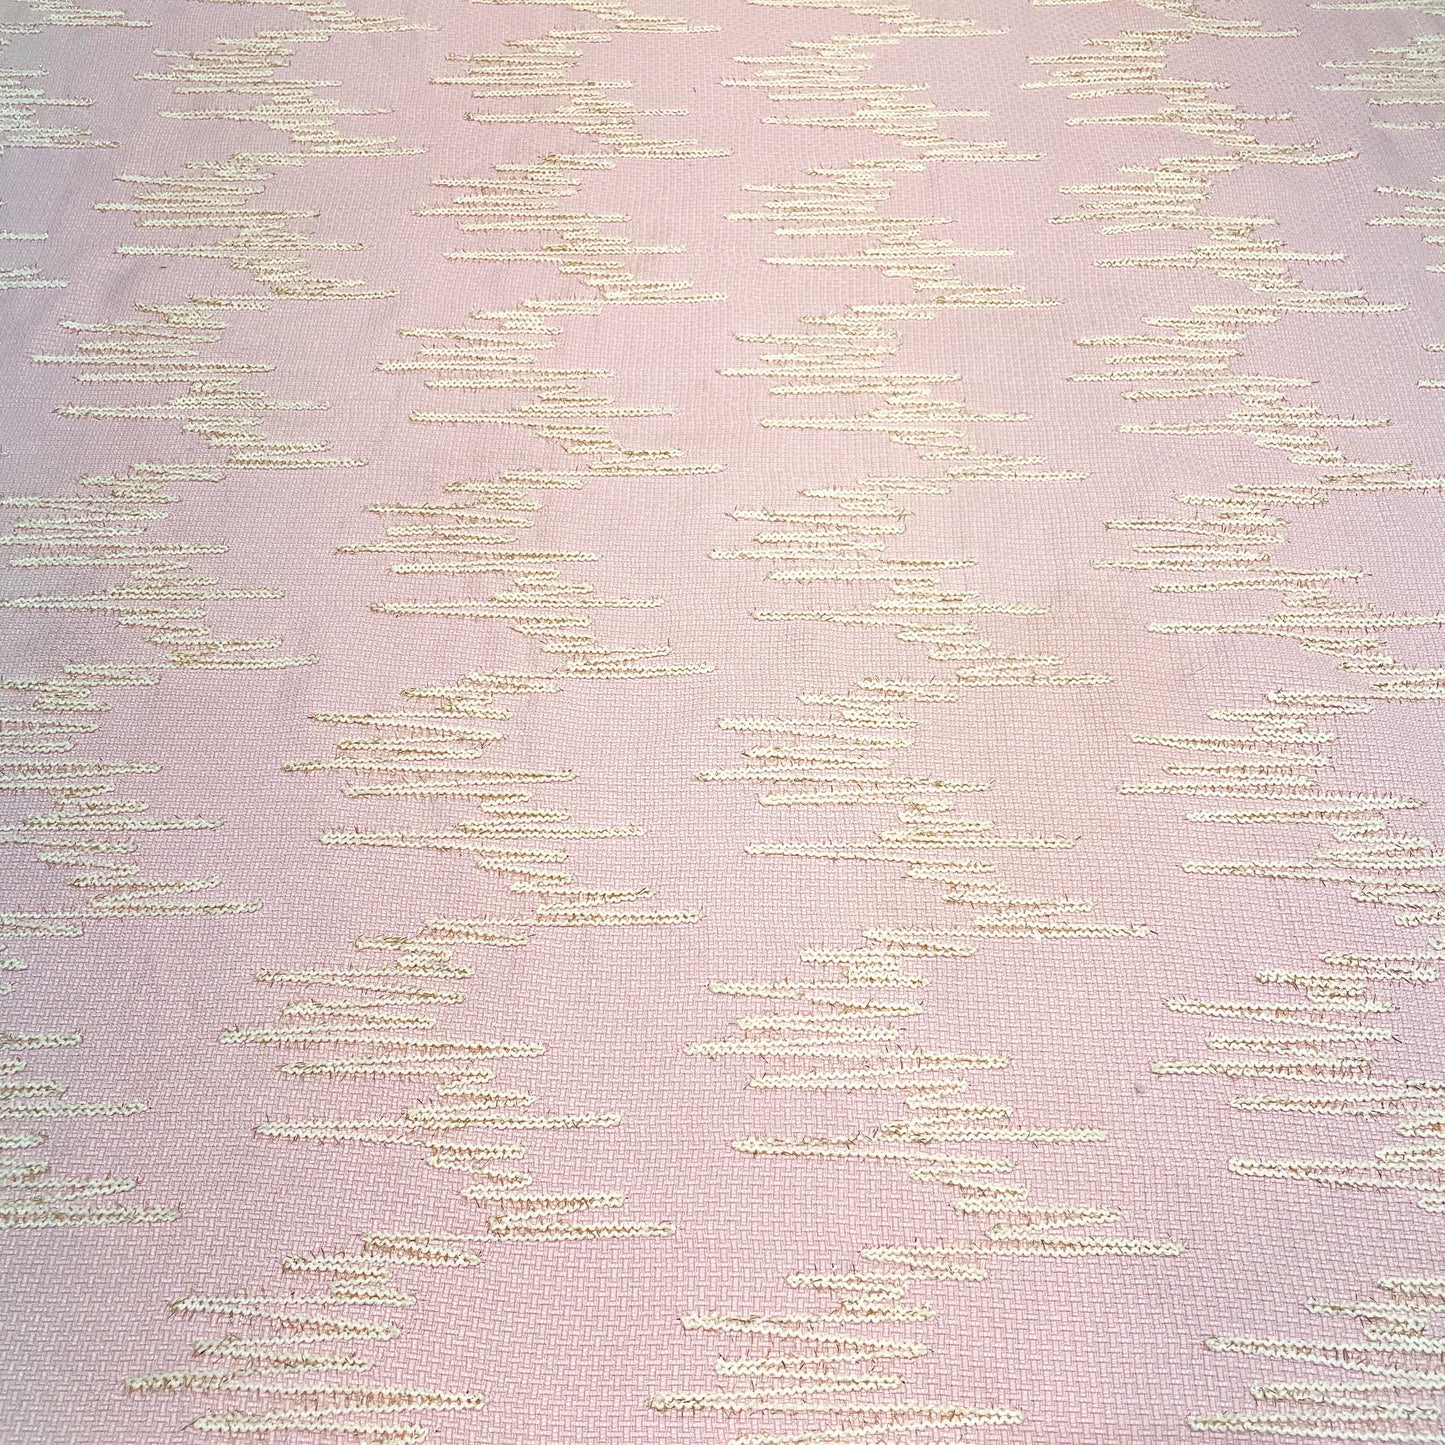 Premium Pink Abstract Handloom Tweed Fabric\